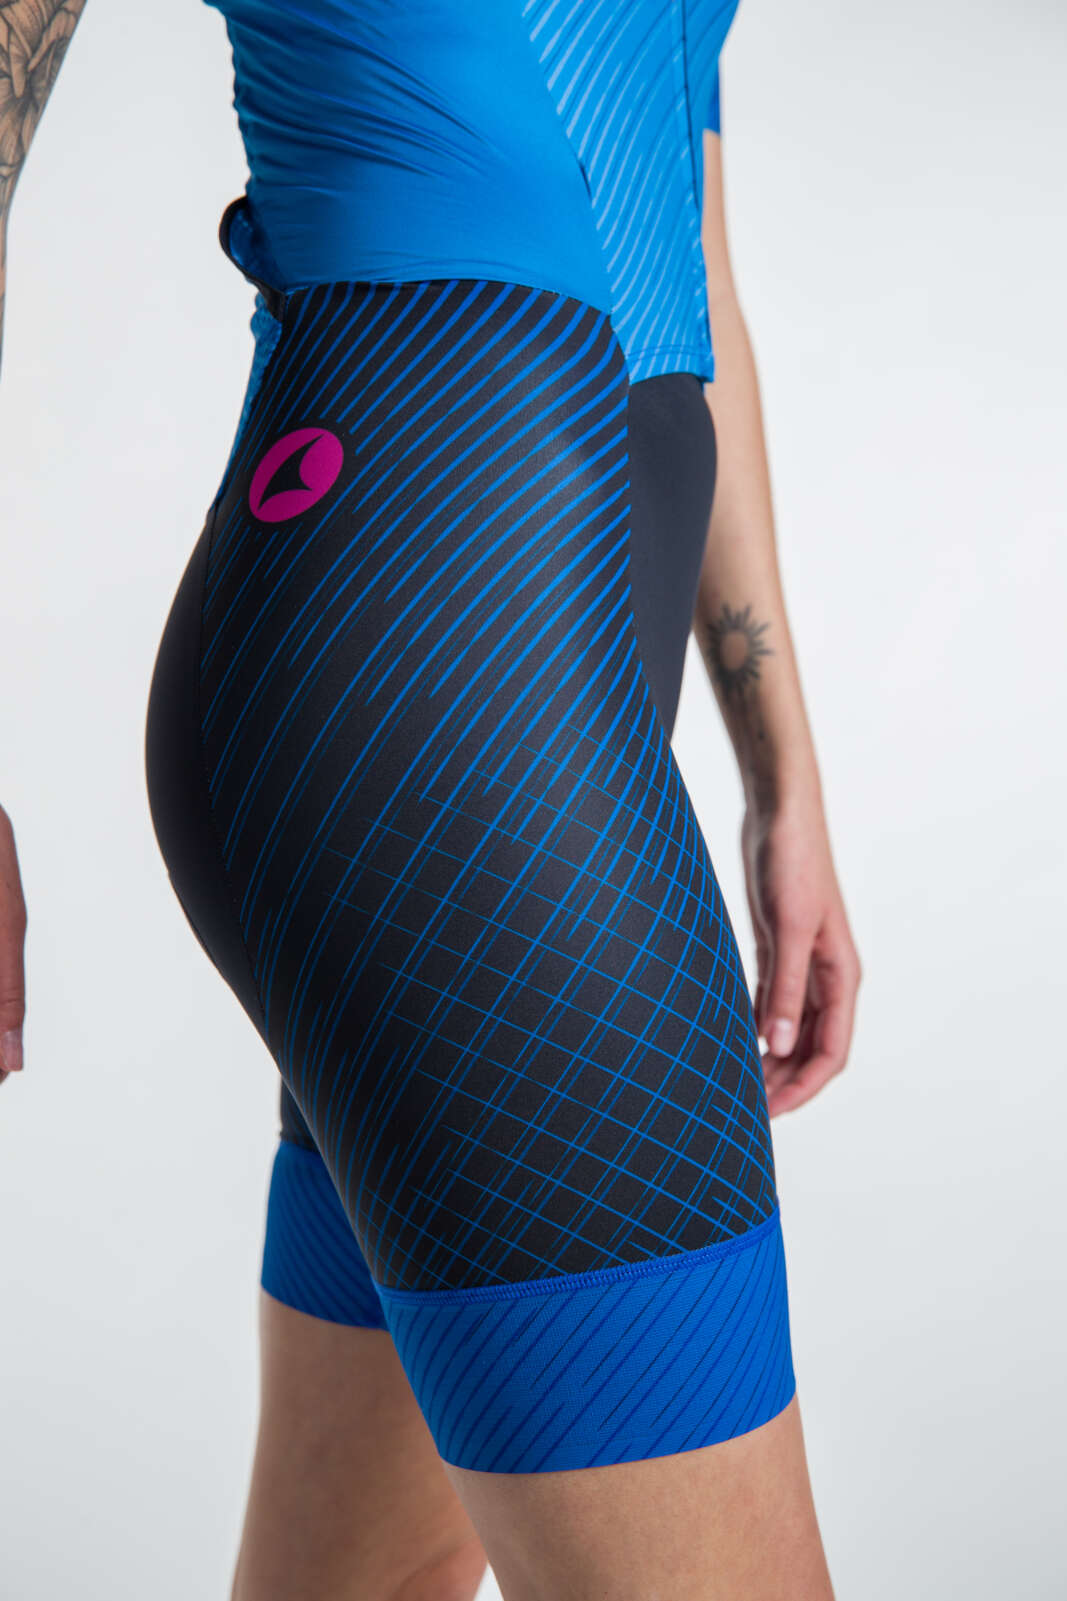 Women's Triathlon Suit - Leg Detail